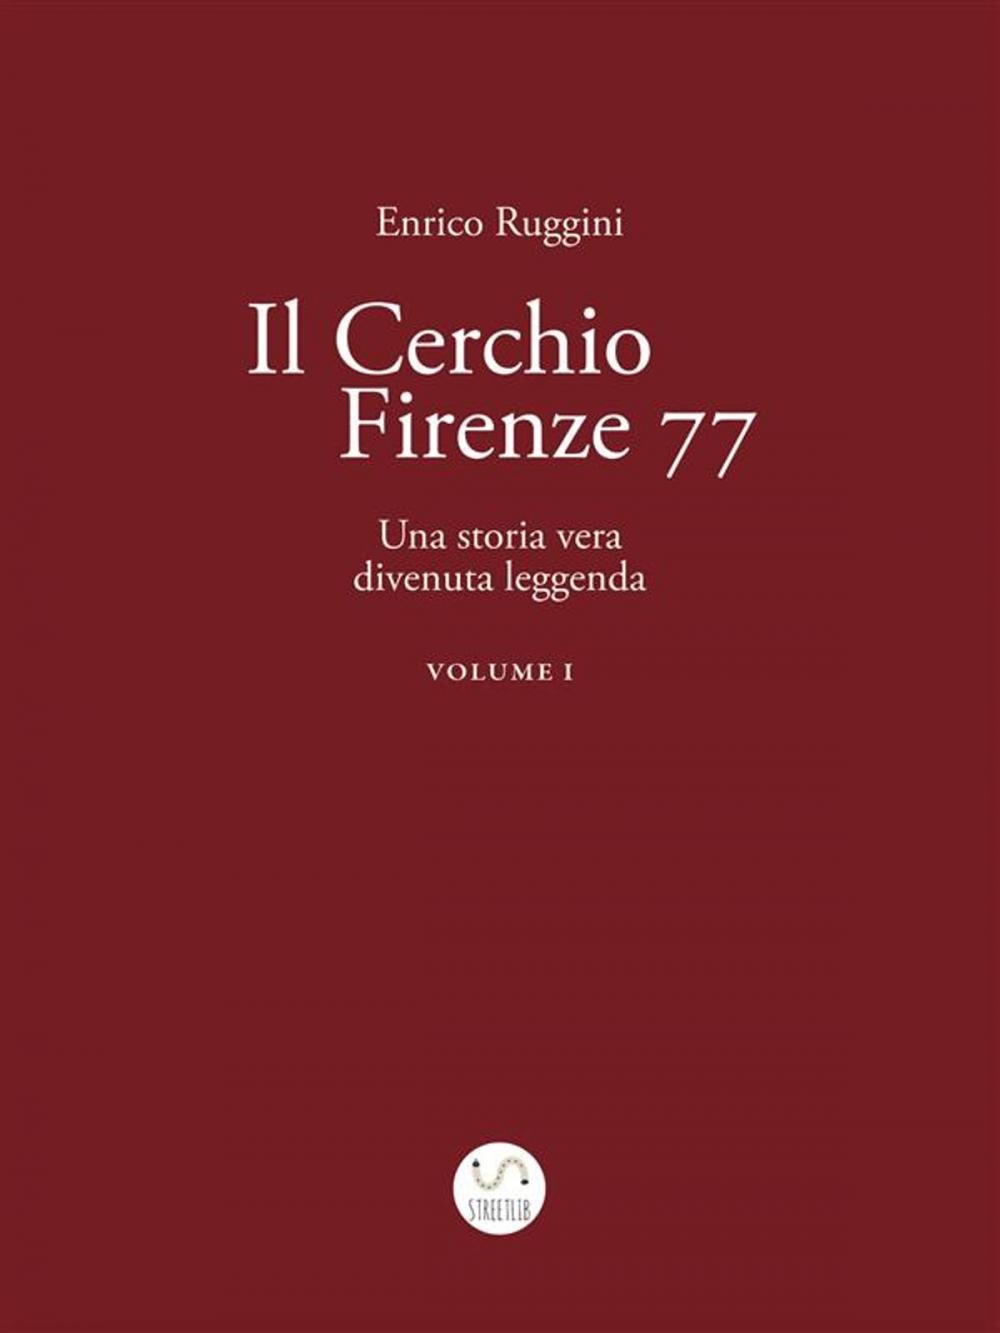 Big bigCover of Il Cerchio Firenze 77, Una storia vera divenuta leggenda Vol 1